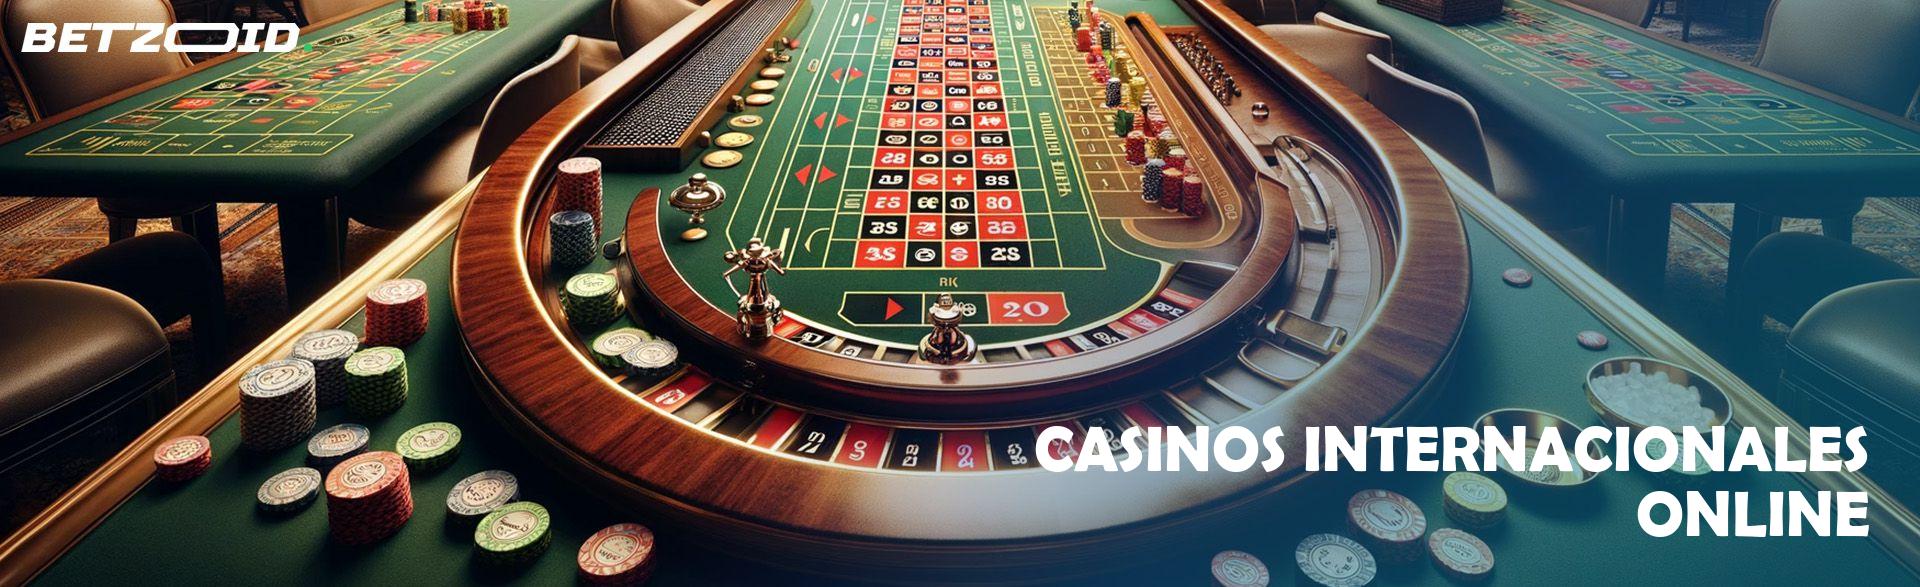 Casinos Internacionales Online.